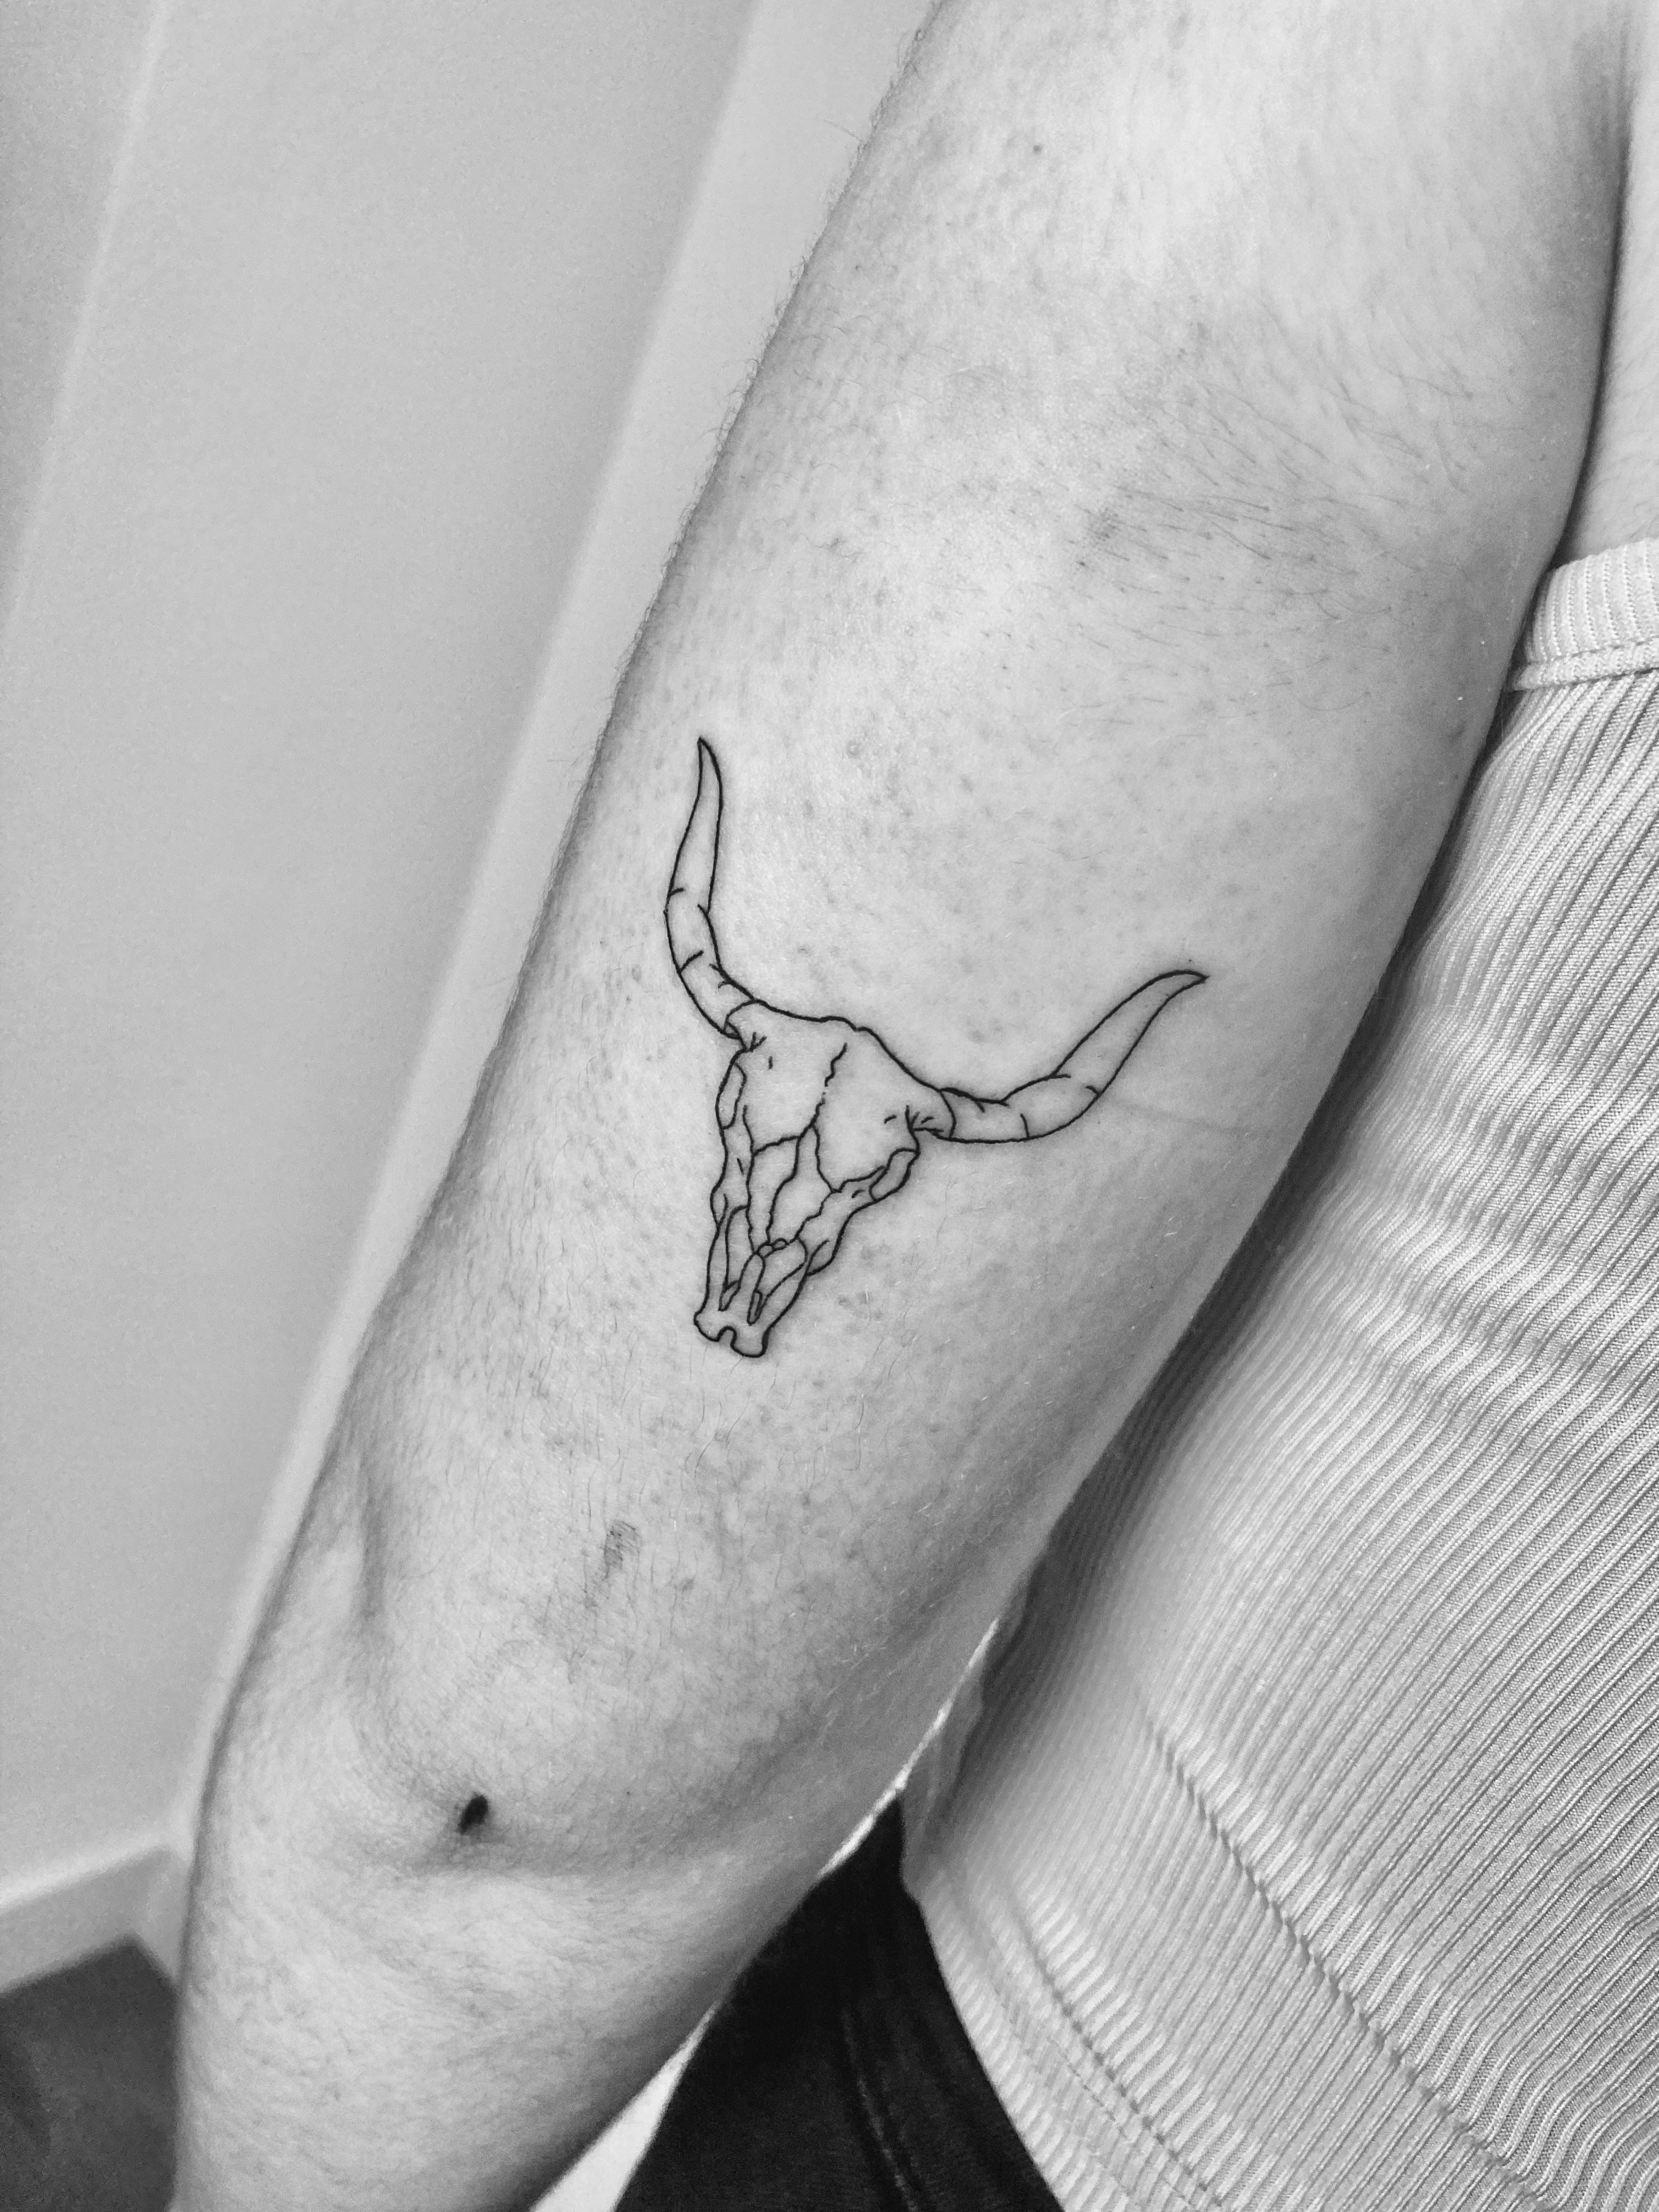 Sweet  simple         artistsoninstagram artist artinsta  tattooideas tattoos tattooartist tattooart dallas texas  Instagram